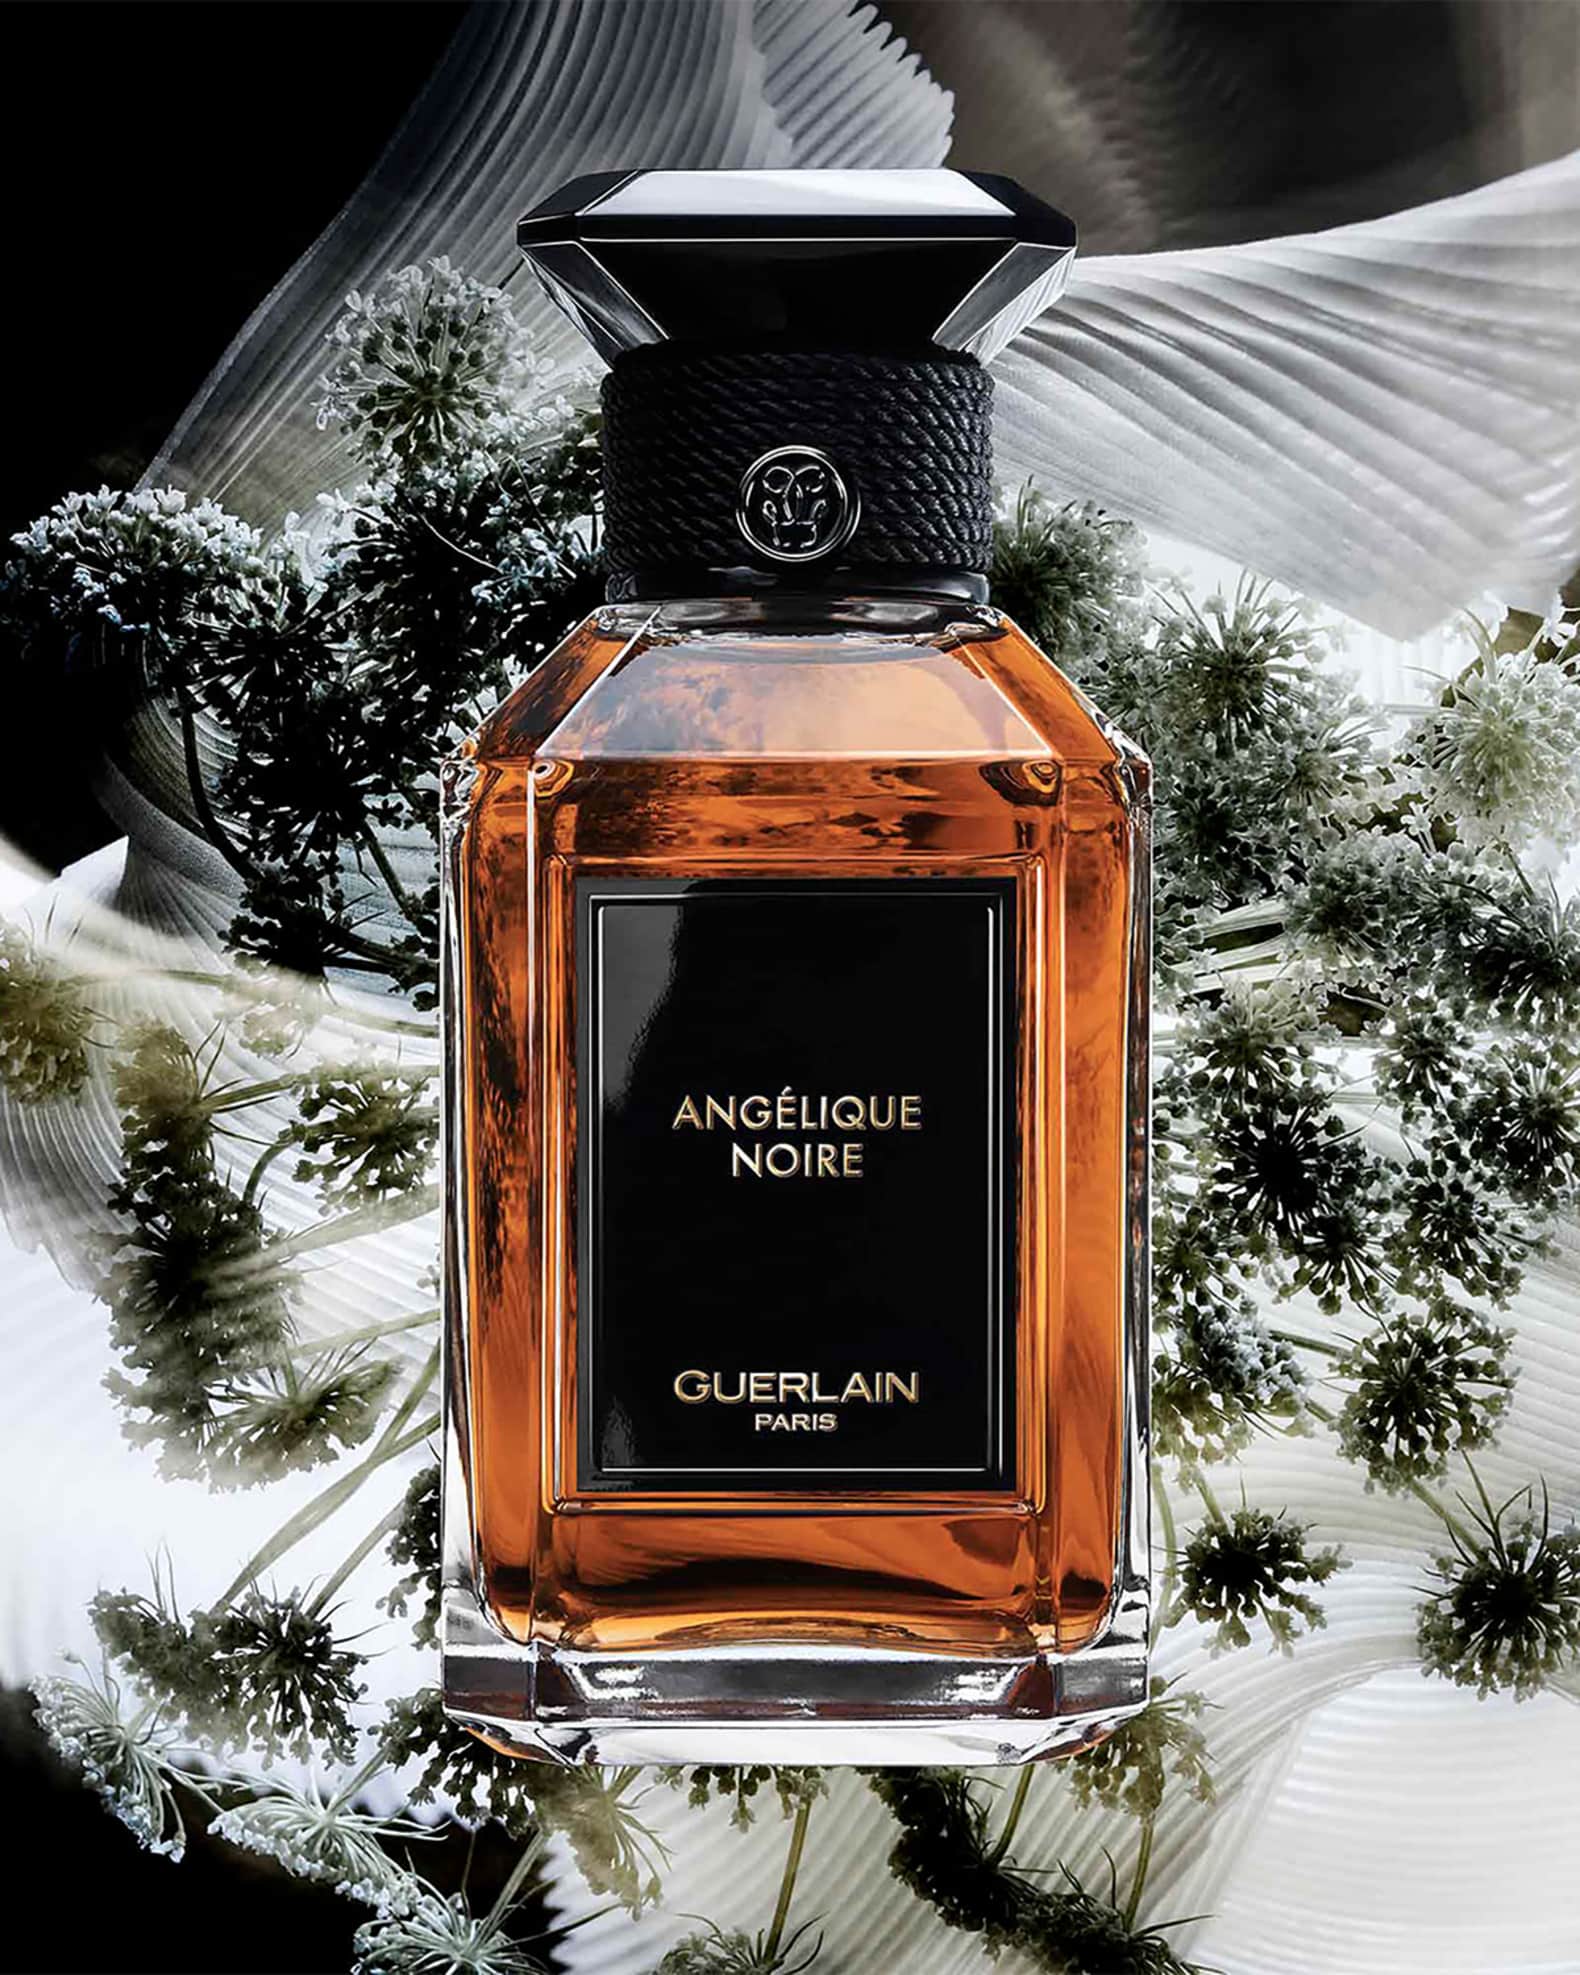 Guerlain Angelique Noire perfume